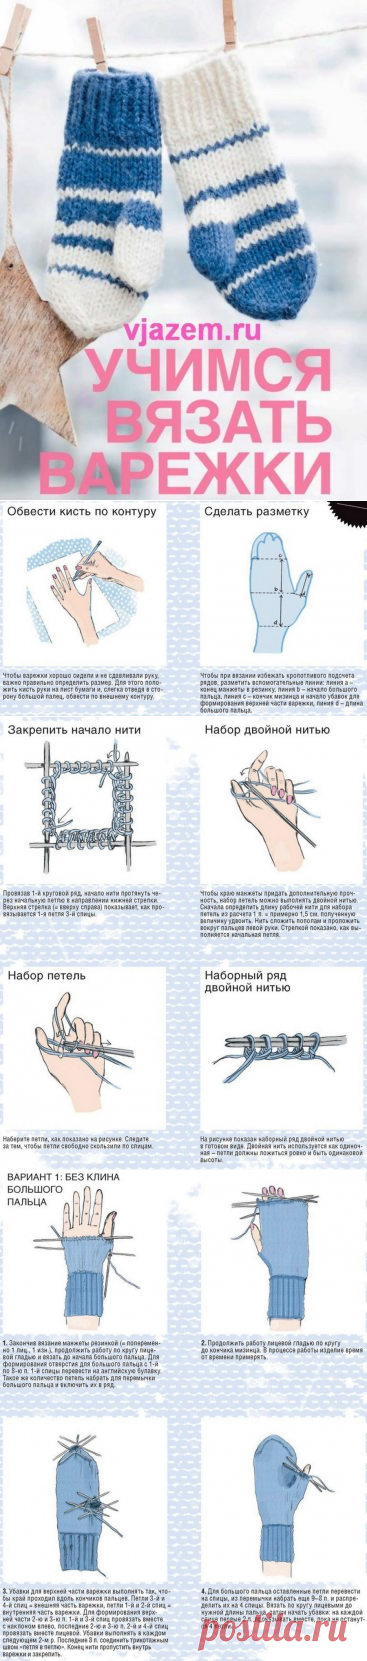 Как вязать варежки спицами для начинающих пошагово с фото и описанием | vjazem.ru